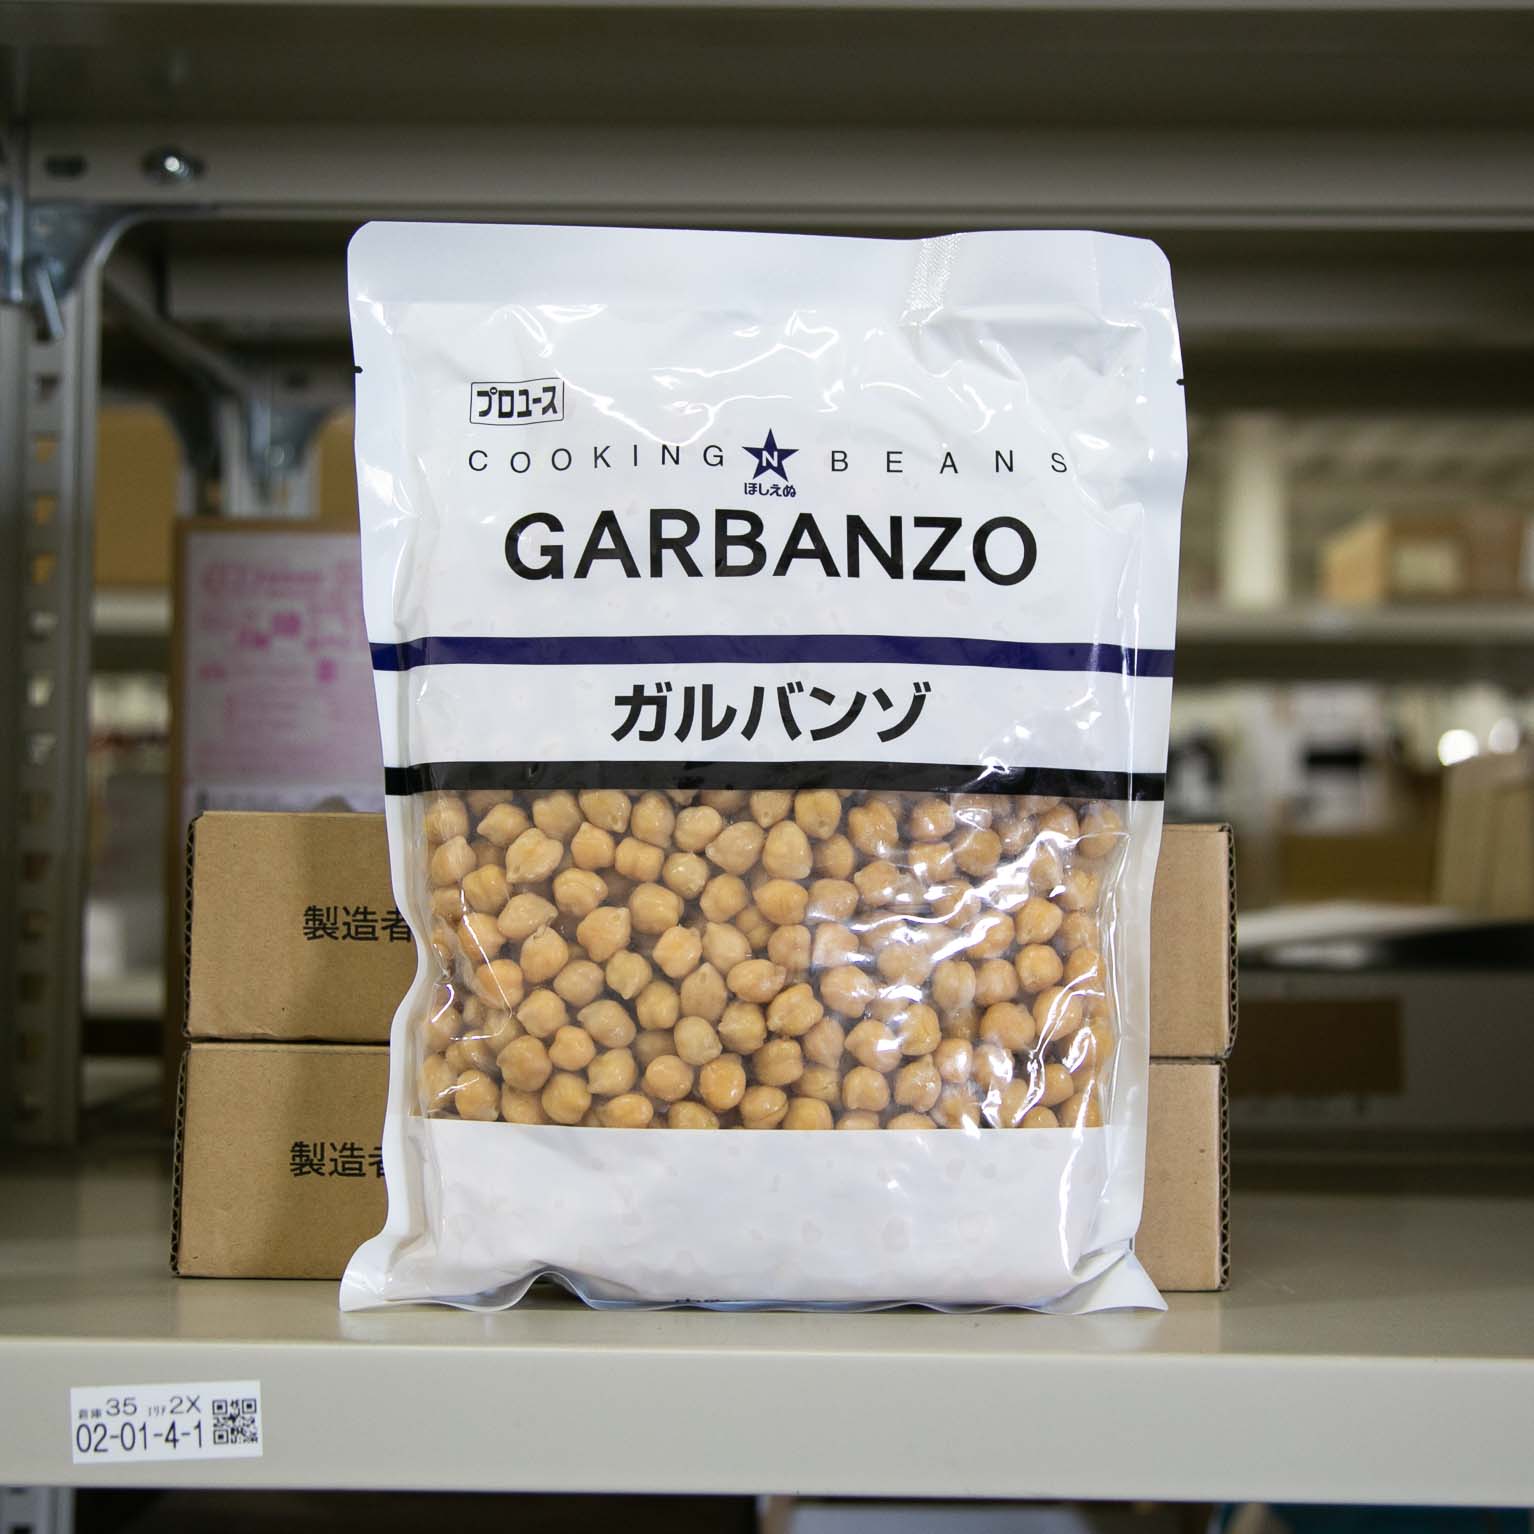 ほしえぬ　orderie(オーダリー)　ガルバンゾ　1KG　雑穀・豆・蕎麦　スモールビジネスのための問屋サービス